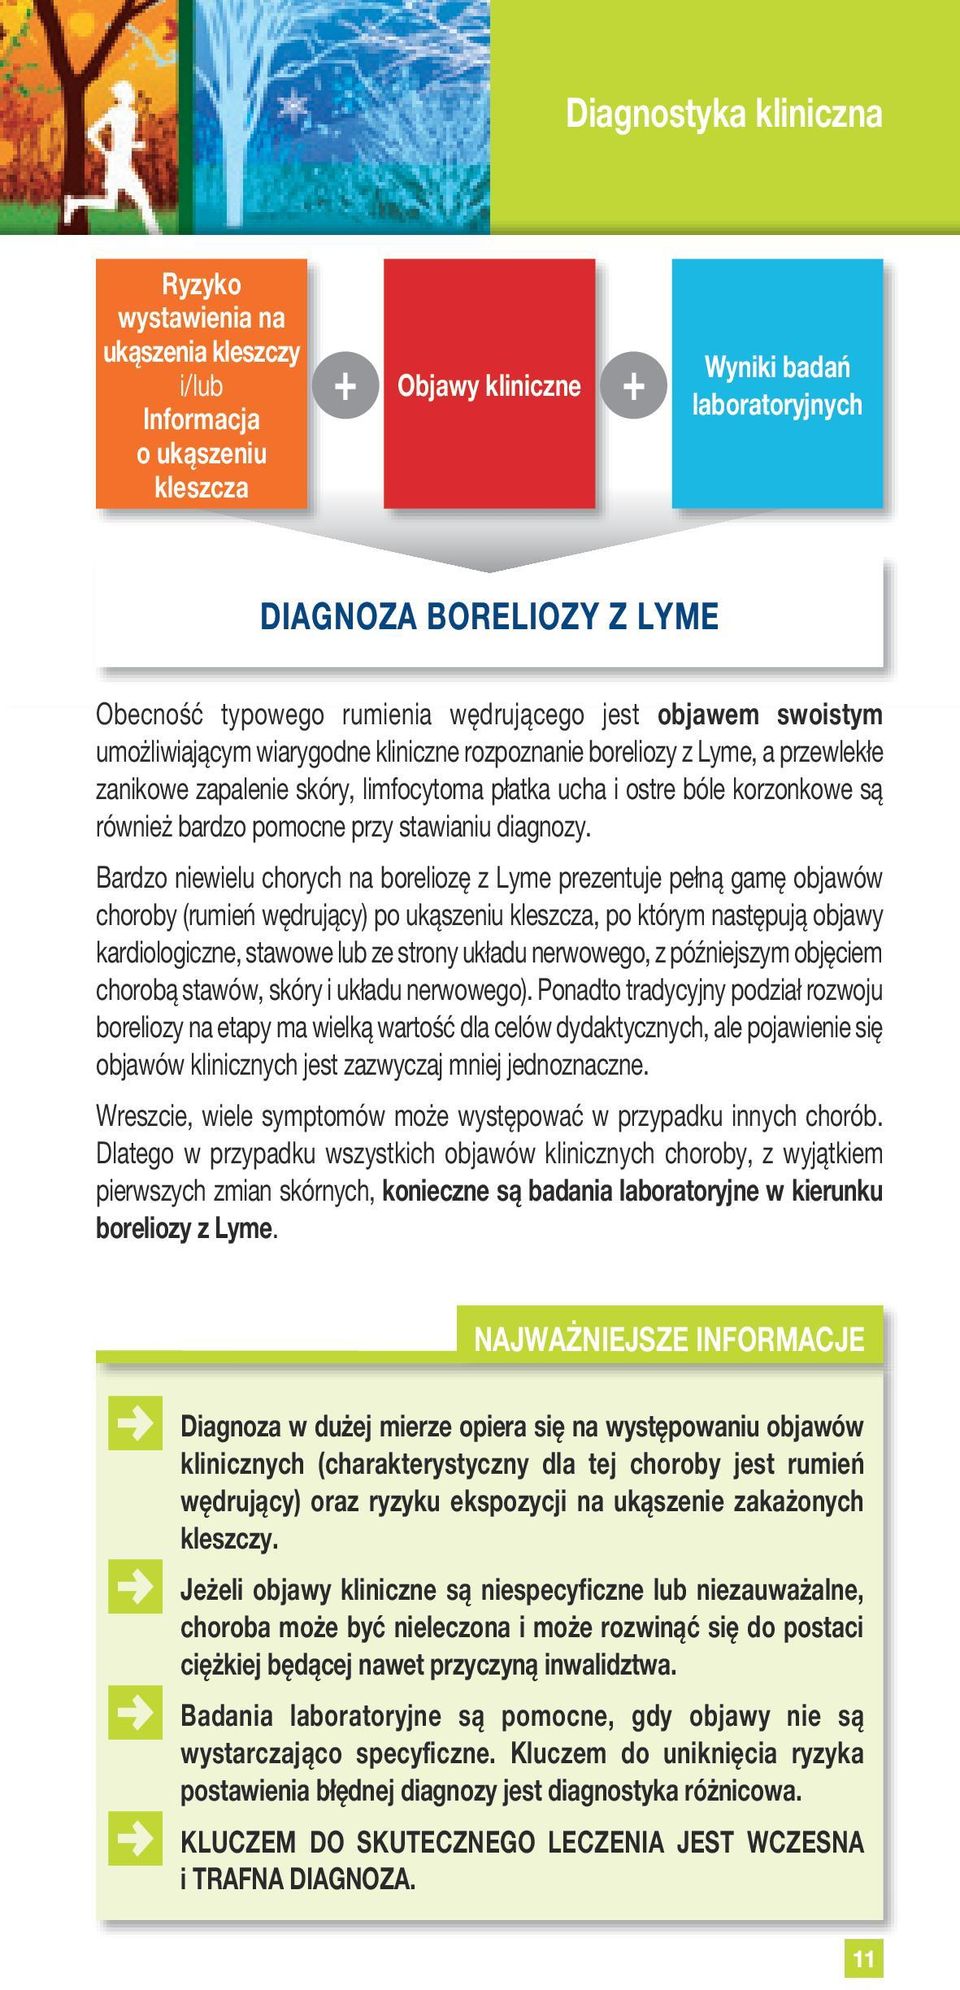 również bardzo pomocne przy stawianiu diagnozy Bardzo niewielu chorych na boreliozę z Lyme prezentuje pełną gamę objawów choroby (rumień wędrujący) po ukąszeniu kleszcza, po którym następują objawy